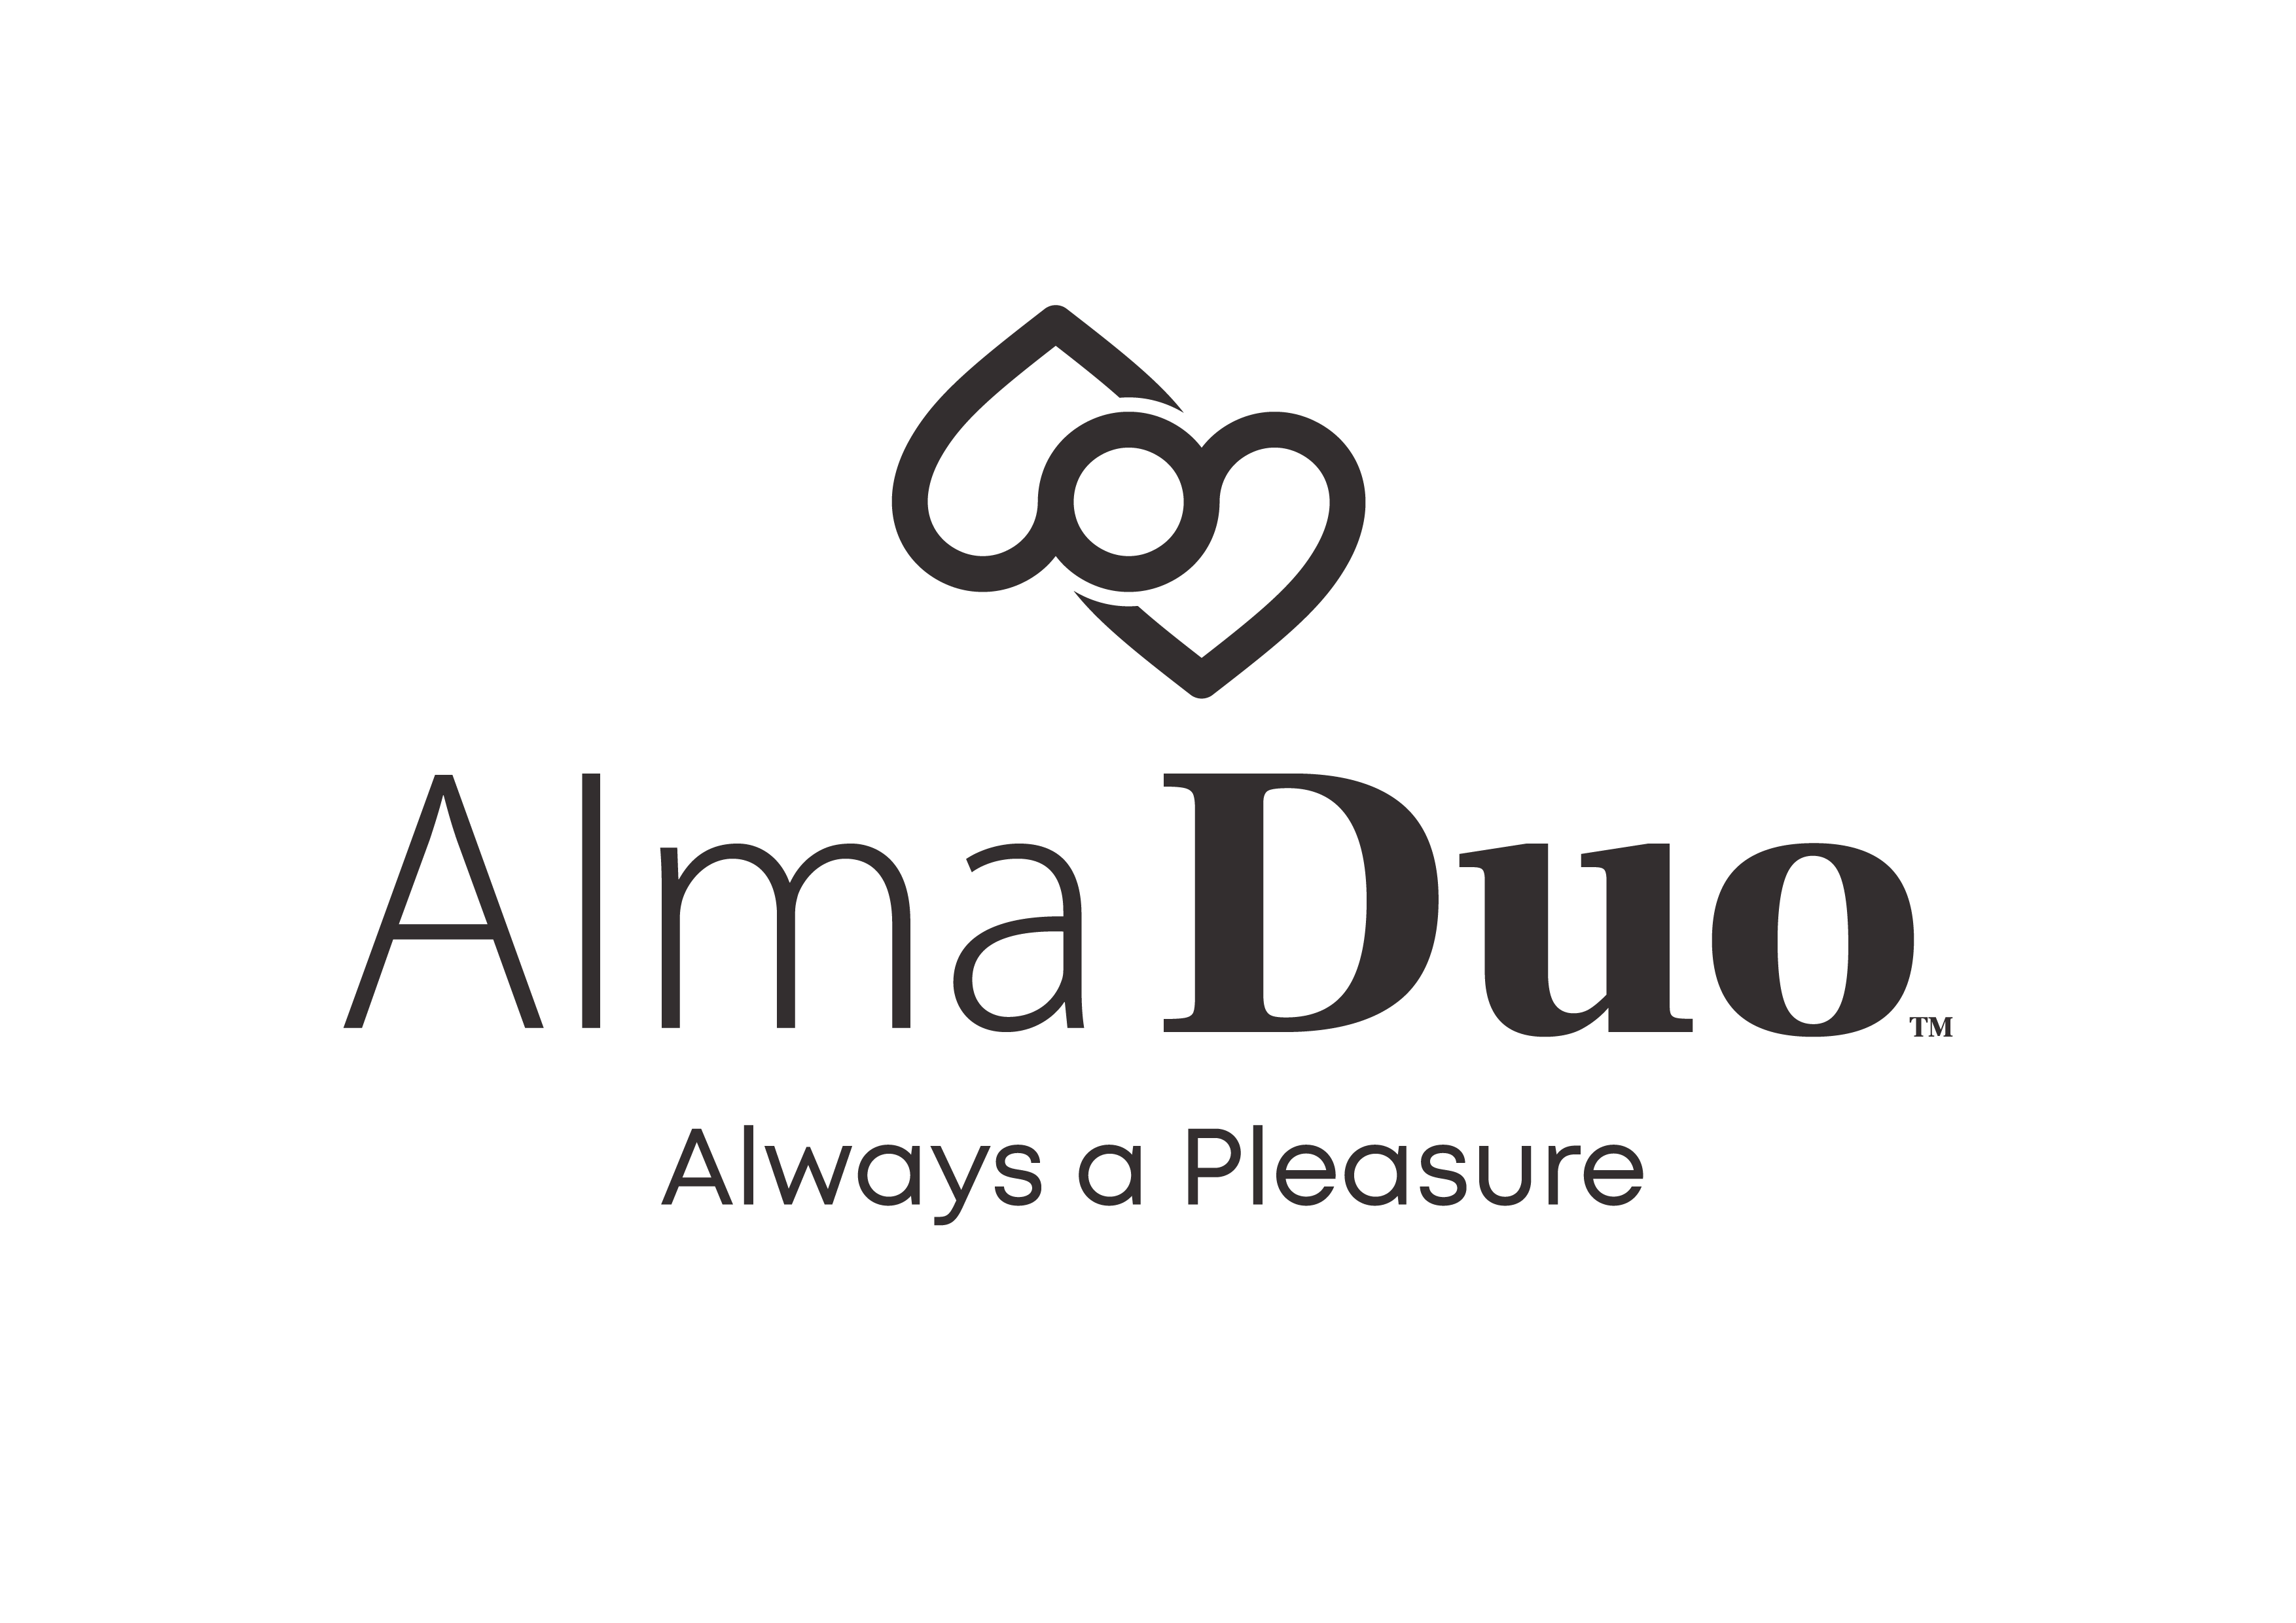 Alma duo